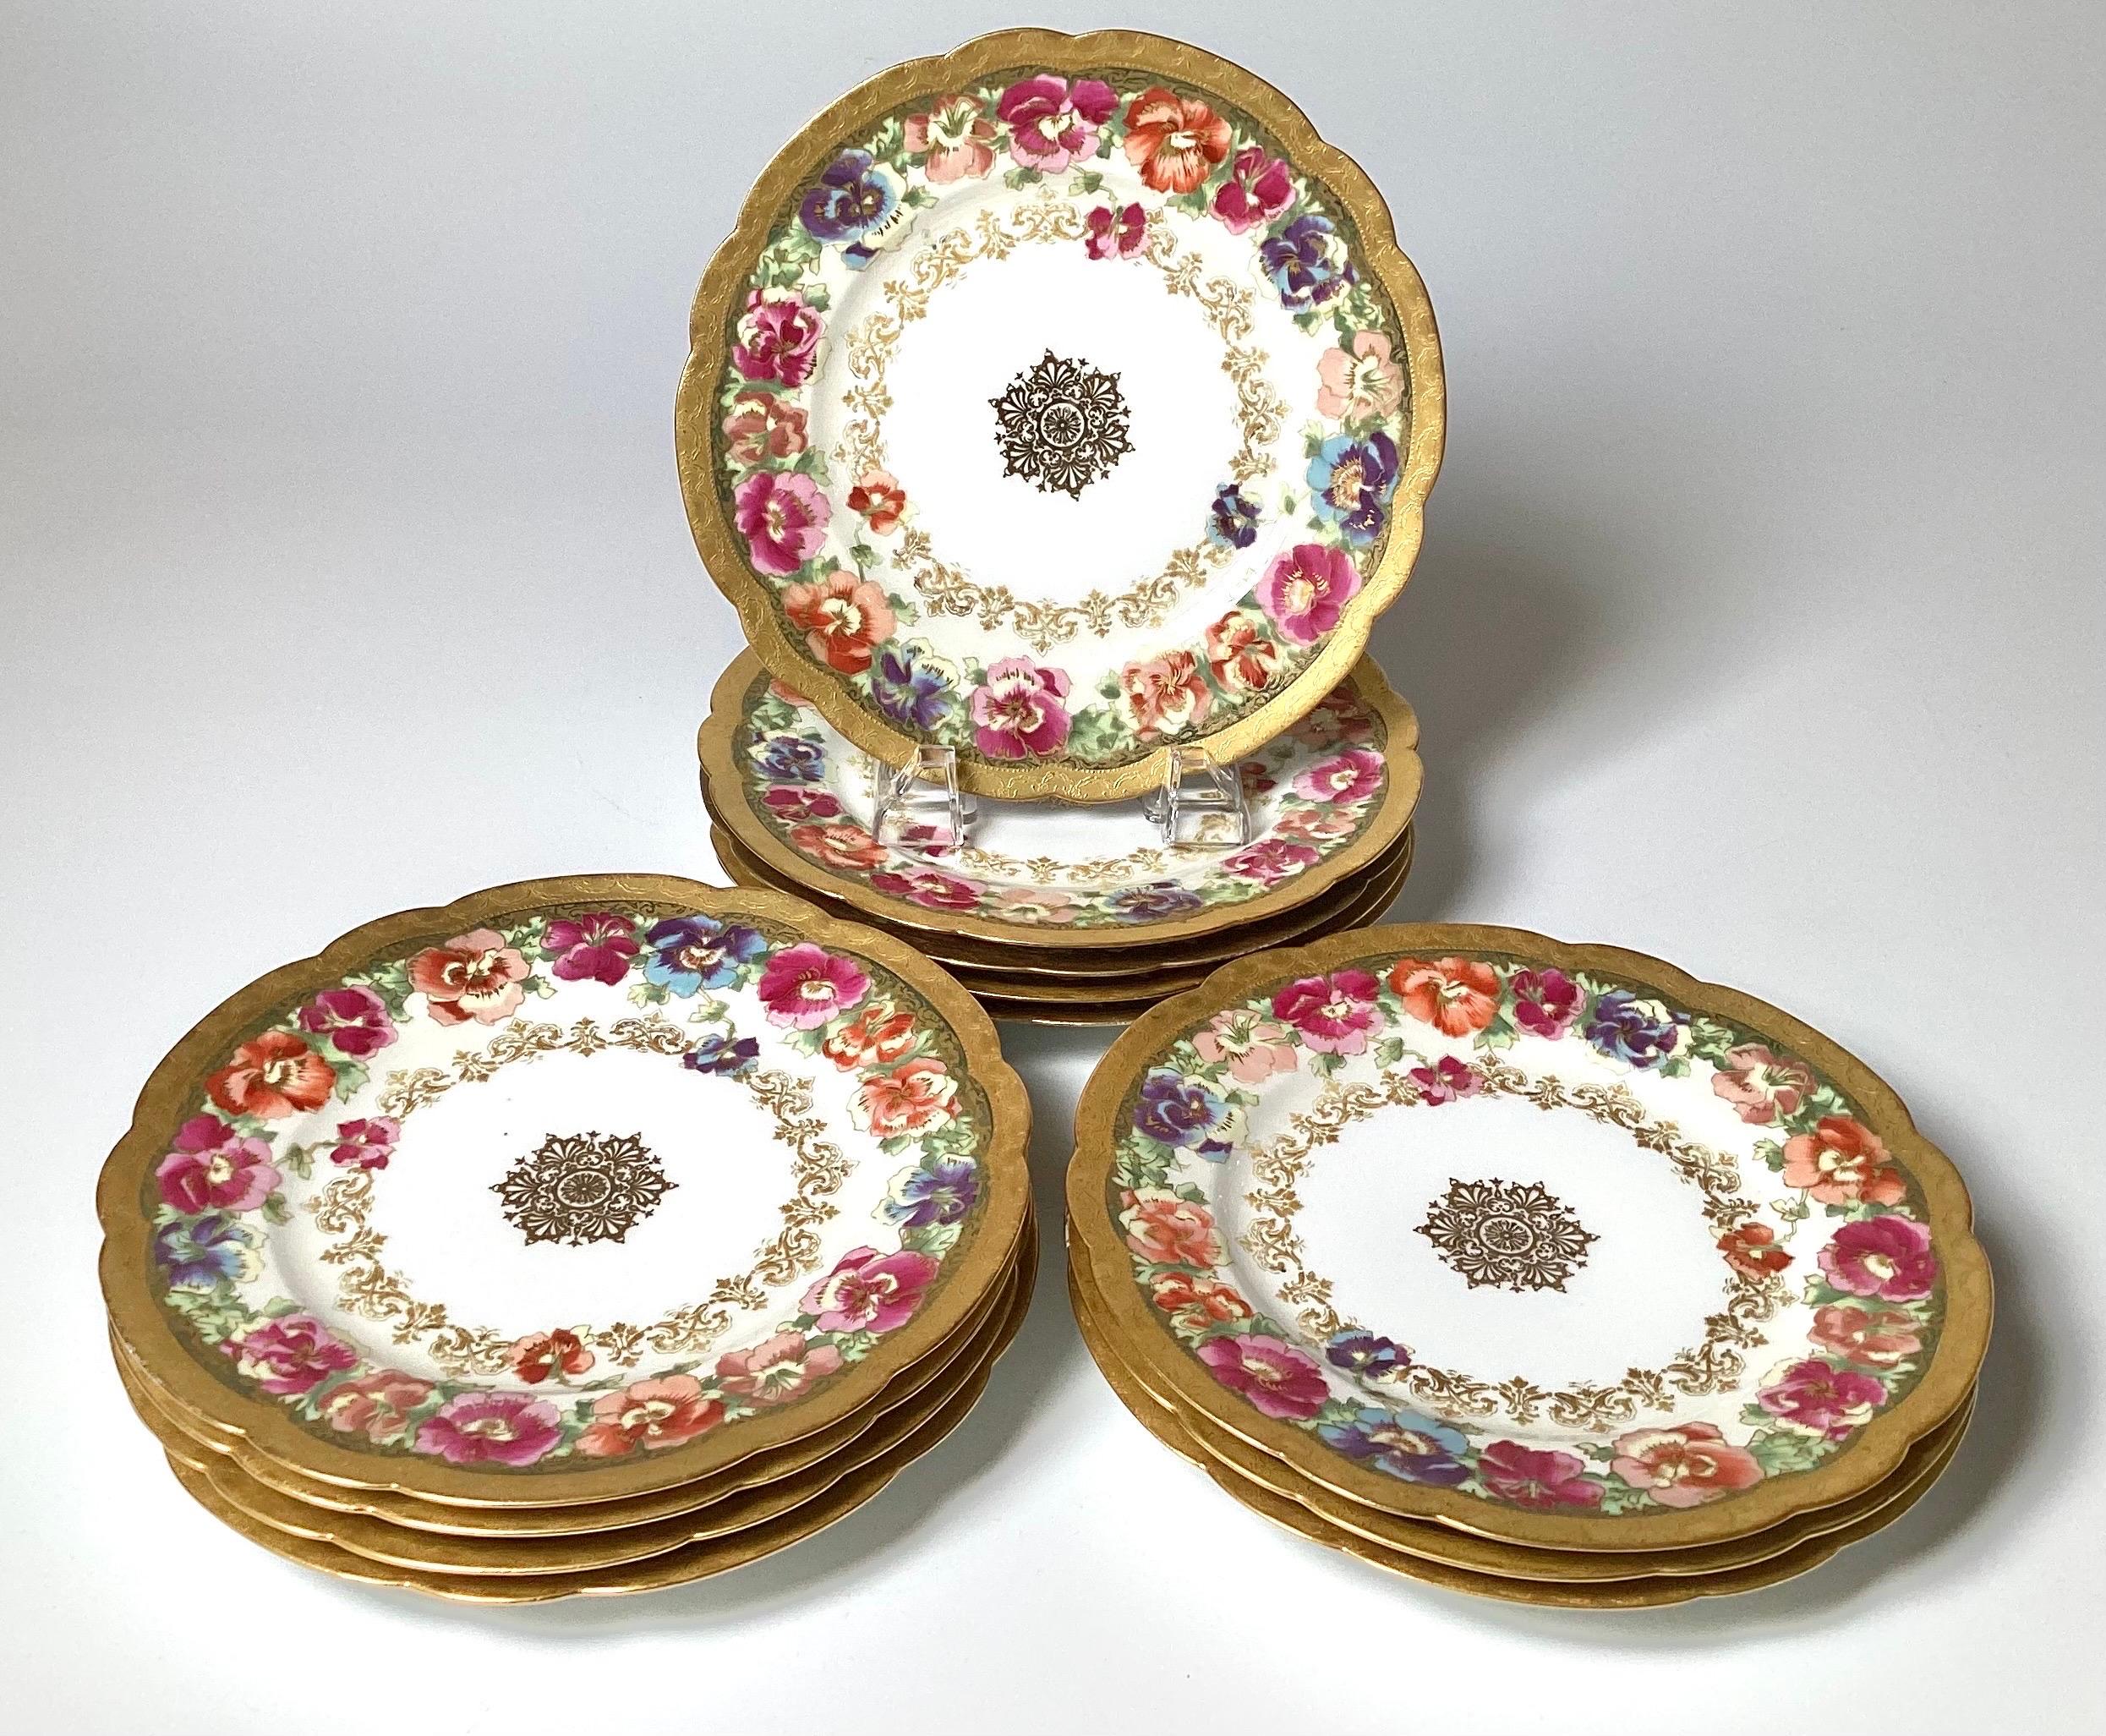 Un ensemble de 12 assiettes à déjeuner décorées à la main de fleurs et de dorures, les assiettes de 8,5 pouces avec des bordures élégantes et un médaillon central, fin du 19ème siècle, marqué Haviland Limoges France sur les dos. Ils sont incroyables